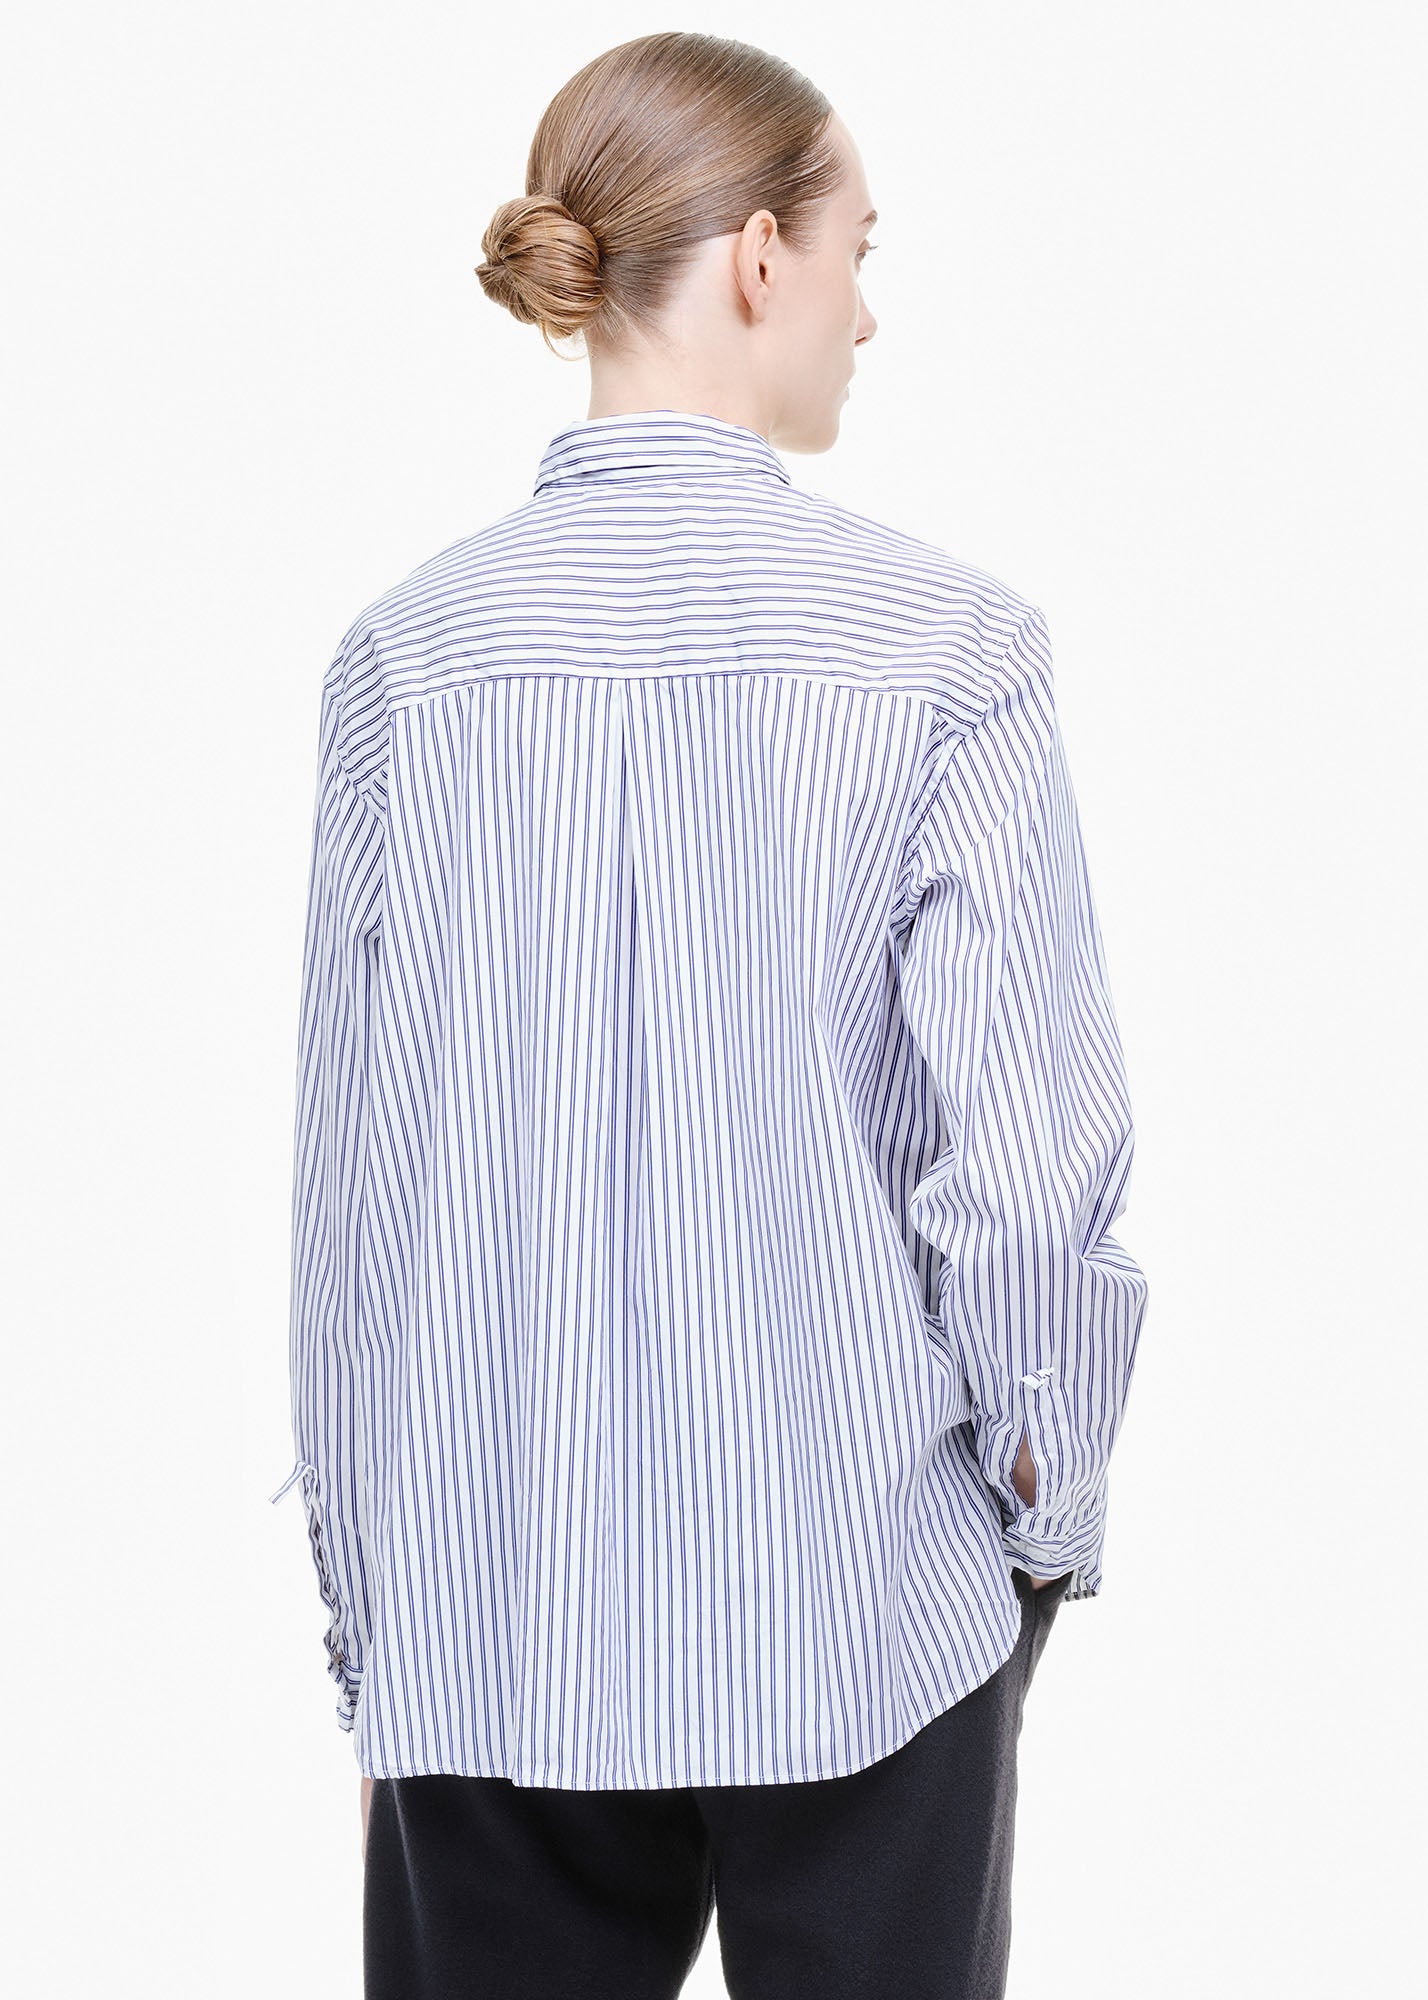 Loose Tyrol Shirt White/ Navy Stripe